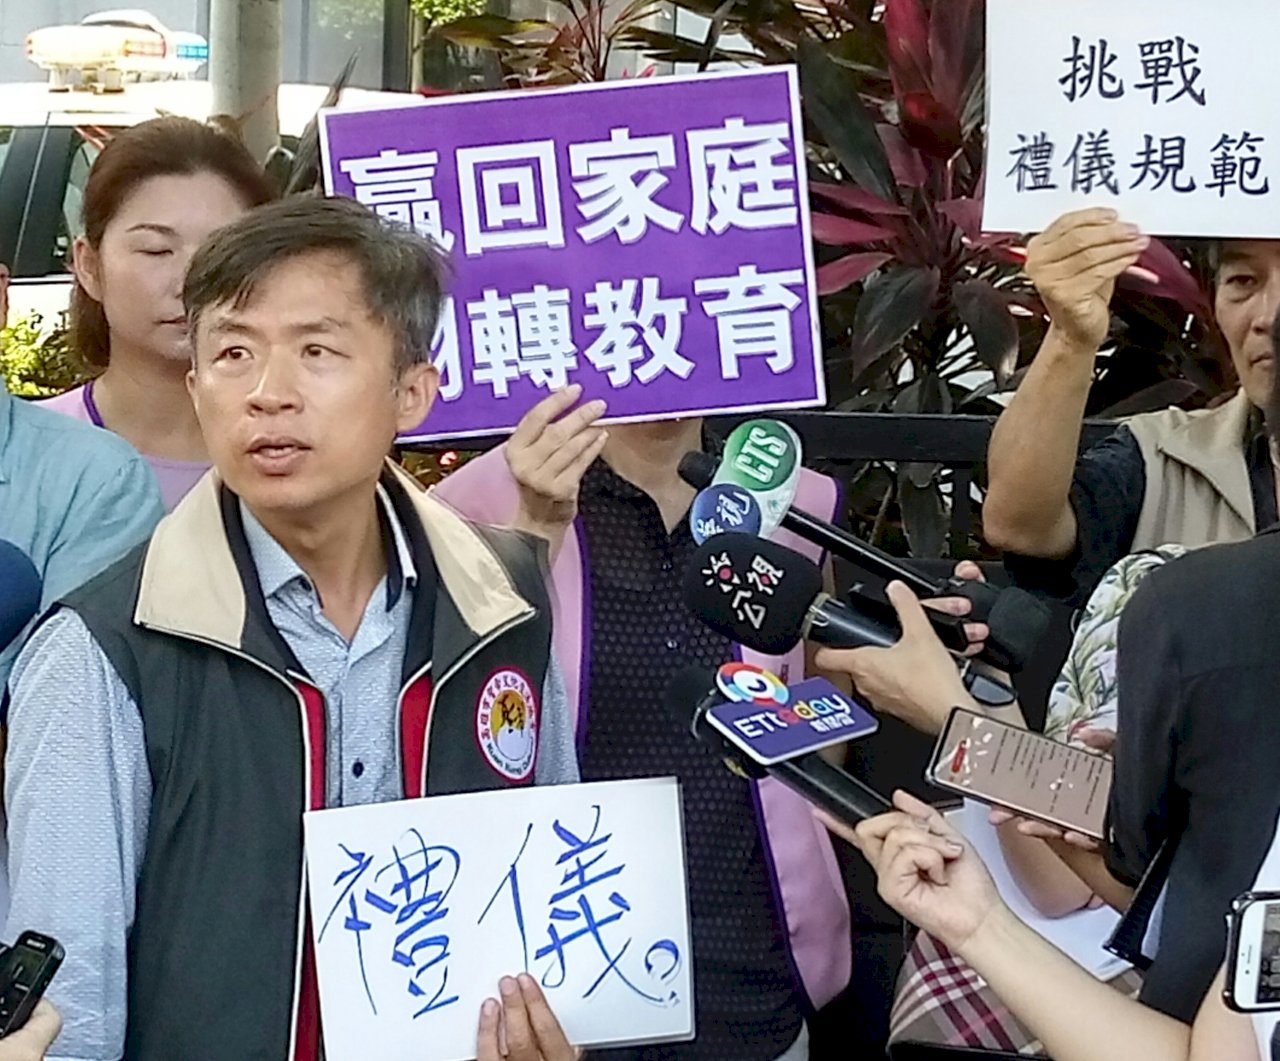 Đoàn thể phụ huynh phản đối cho phép nam sinh mặc váy đi học Bộ Giáo dục  tôn trọng quy định của nhà trường  Tin tức  Rti Radio Taiwan International